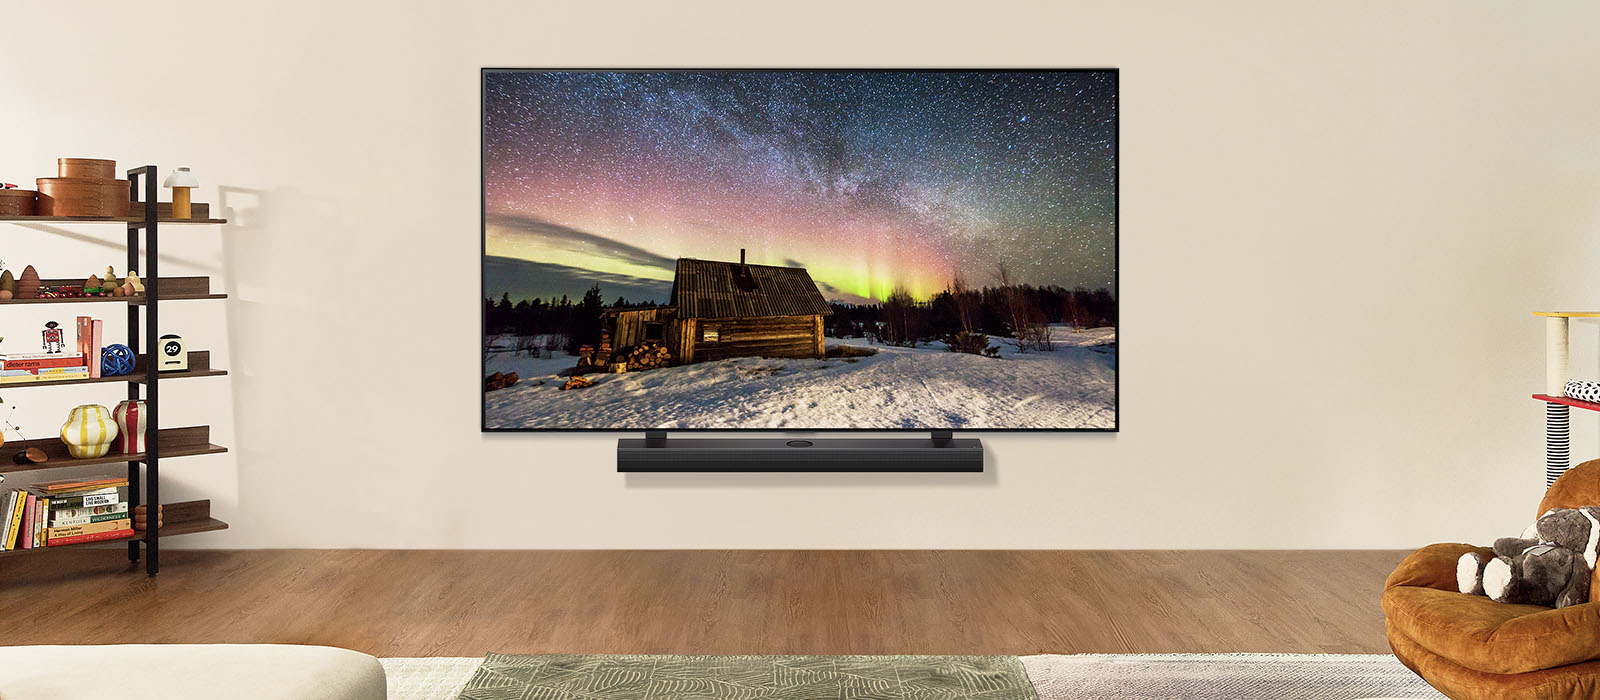 Телевізор LG та саундбар LG в сучасному житловому приміщенні вдень. Екранне зображення полярного сяйва відображається з ідеальними рівнями яскравості.